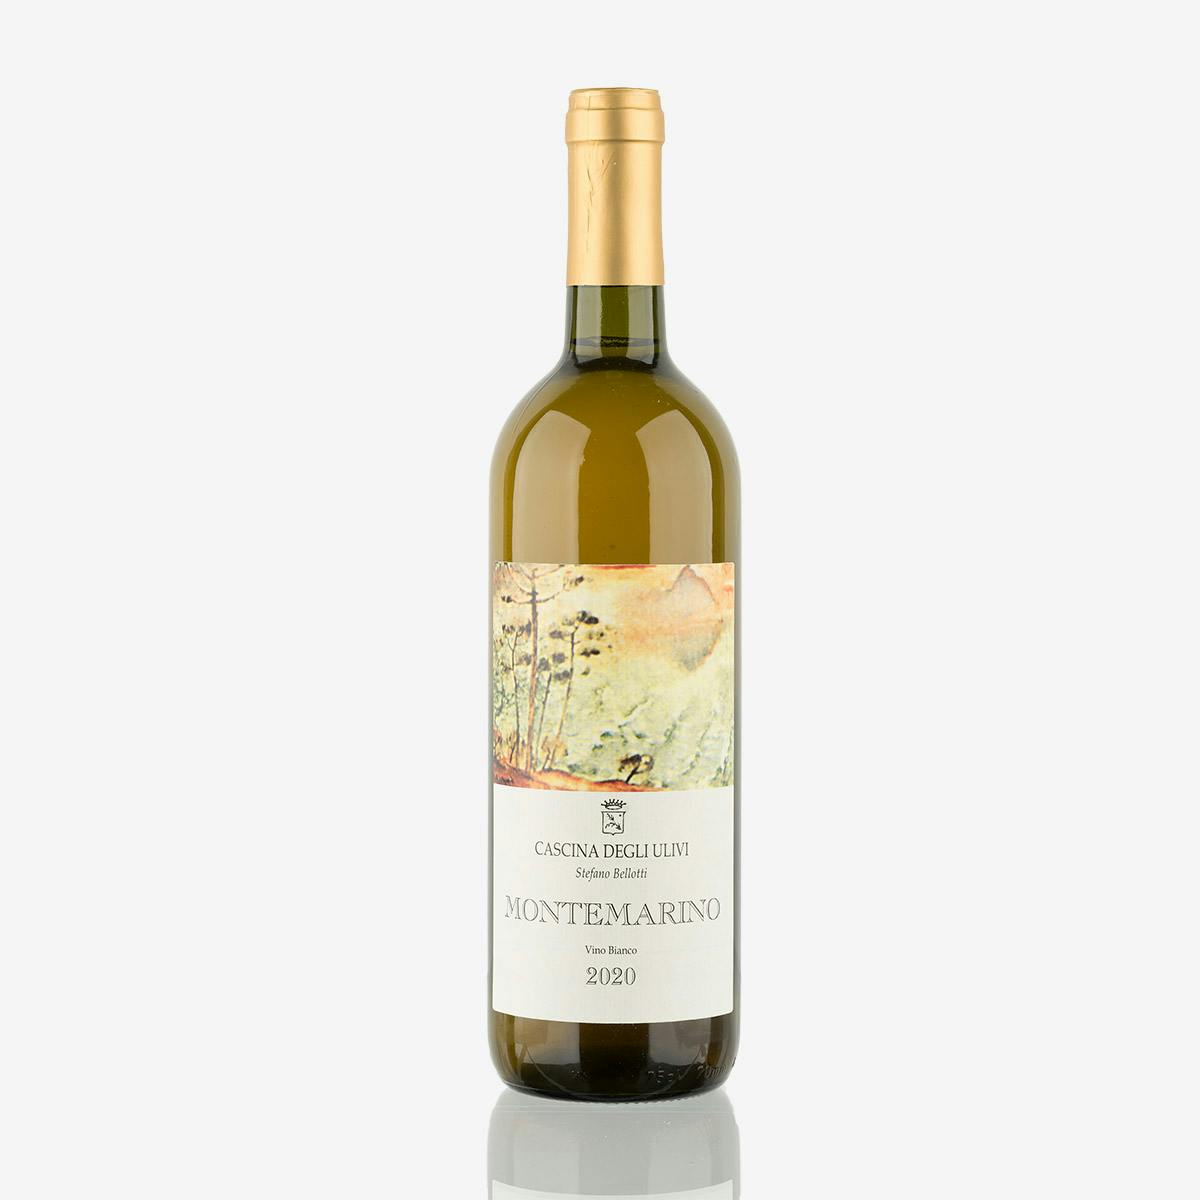 'Montemarino' Vino Bianco